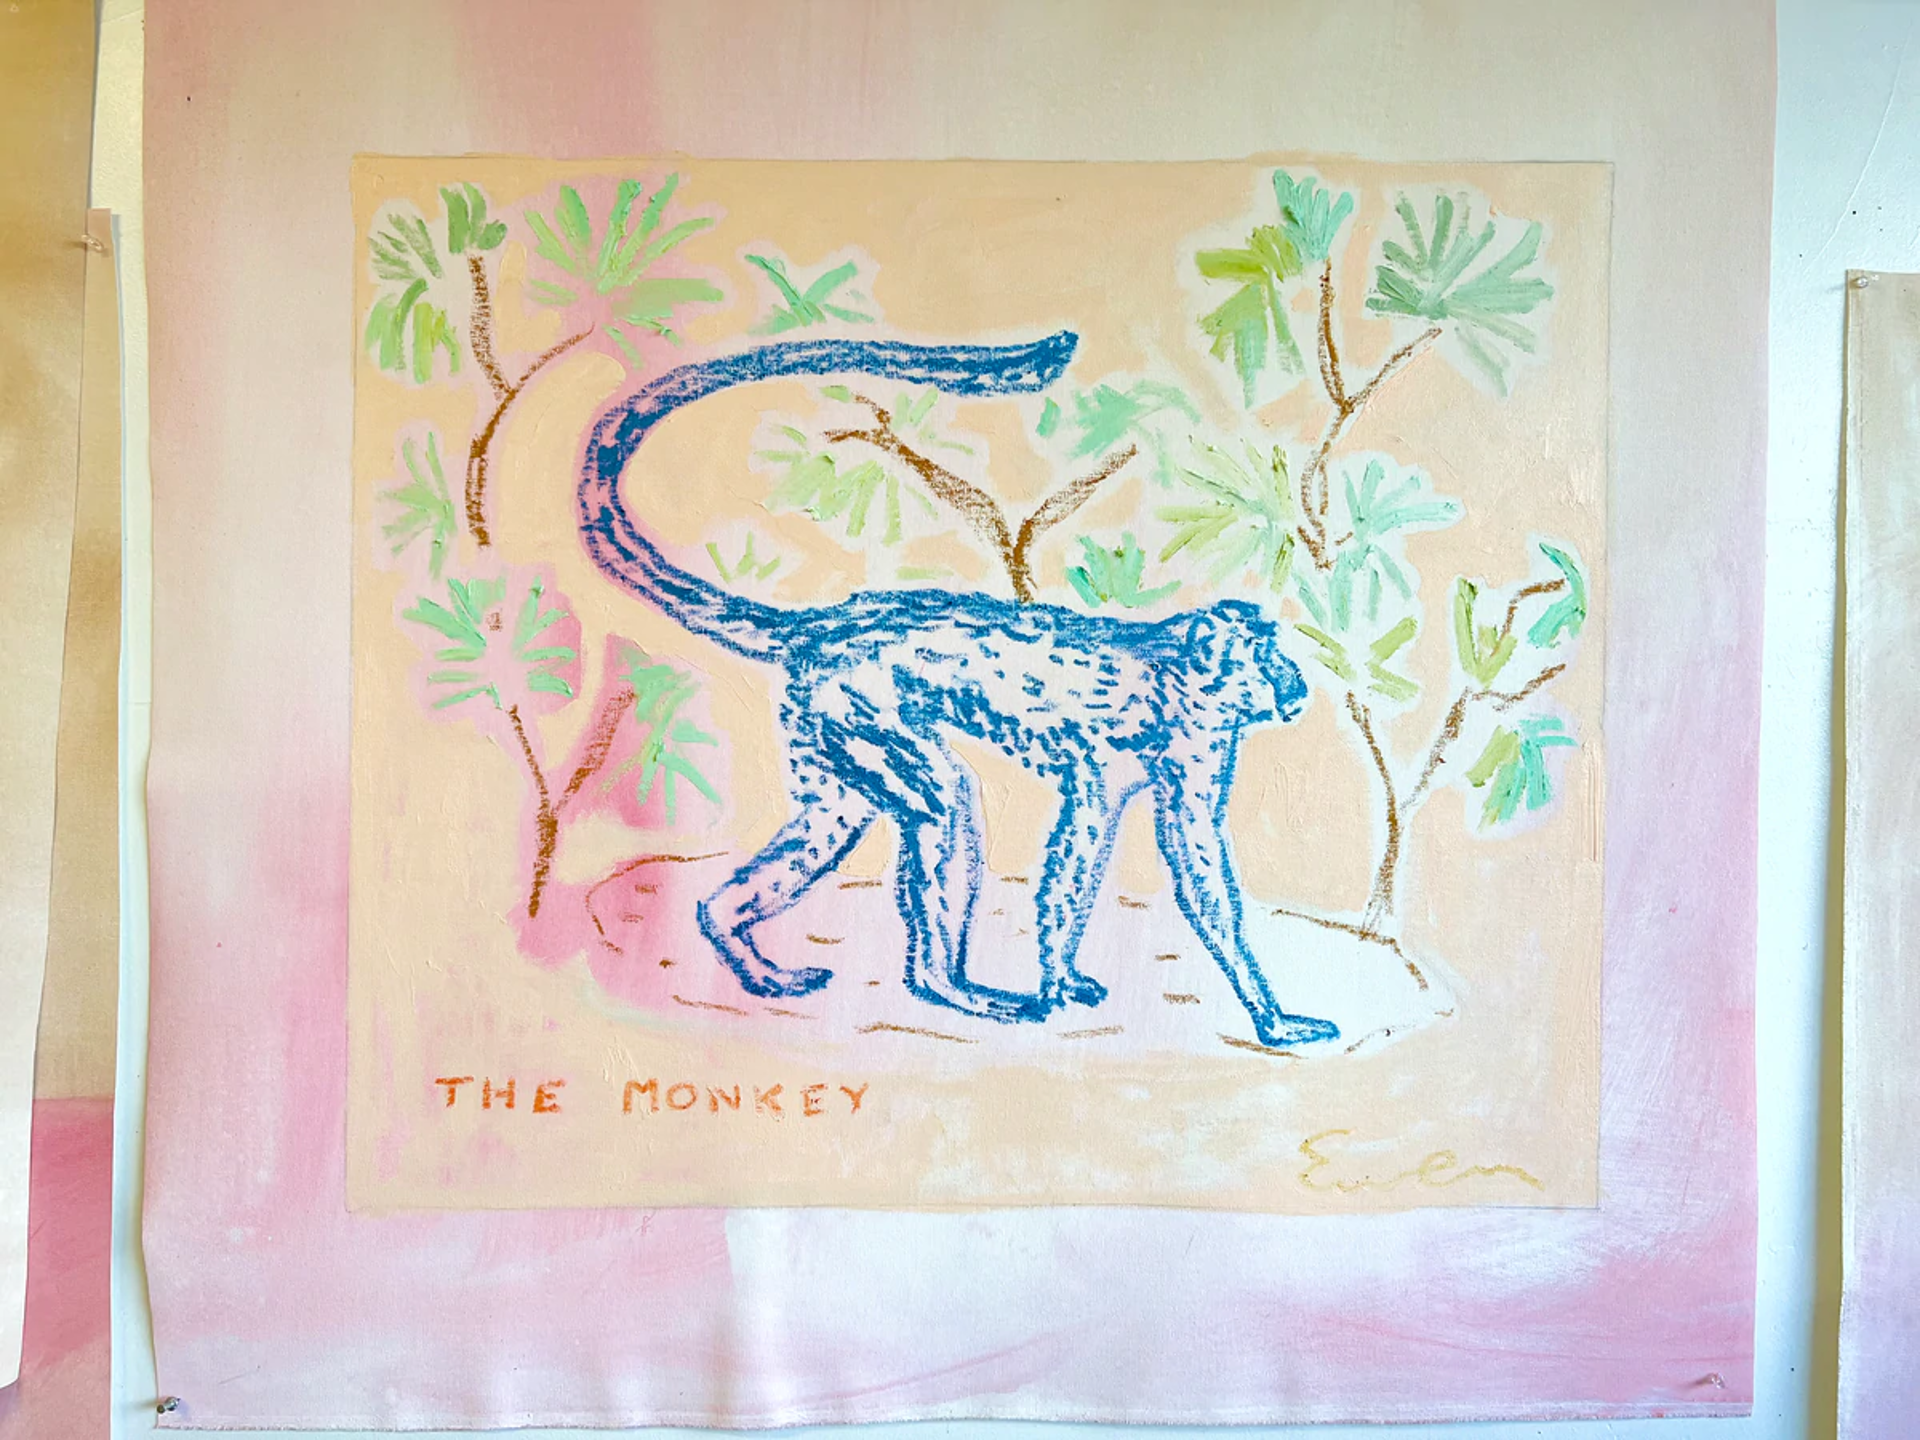 The Blue Monkey by Anne-Louise Ewen